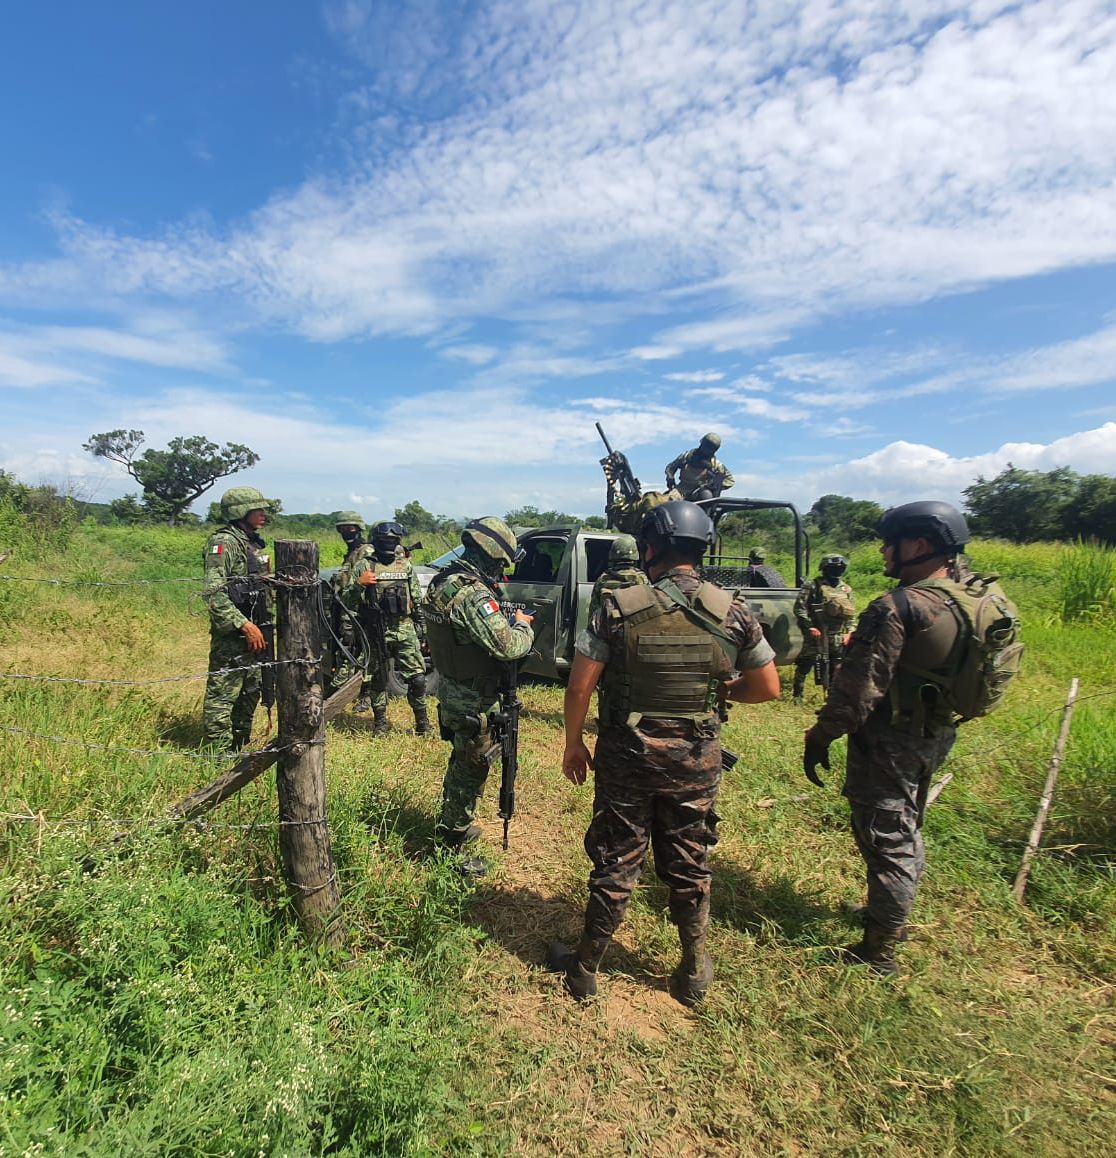 Ejército reporta balacera a dos kilómetros de donde se ubicaba comitiva presidencial en Huehuetenango (hay un herido y cuatro posibles detenidos en México)